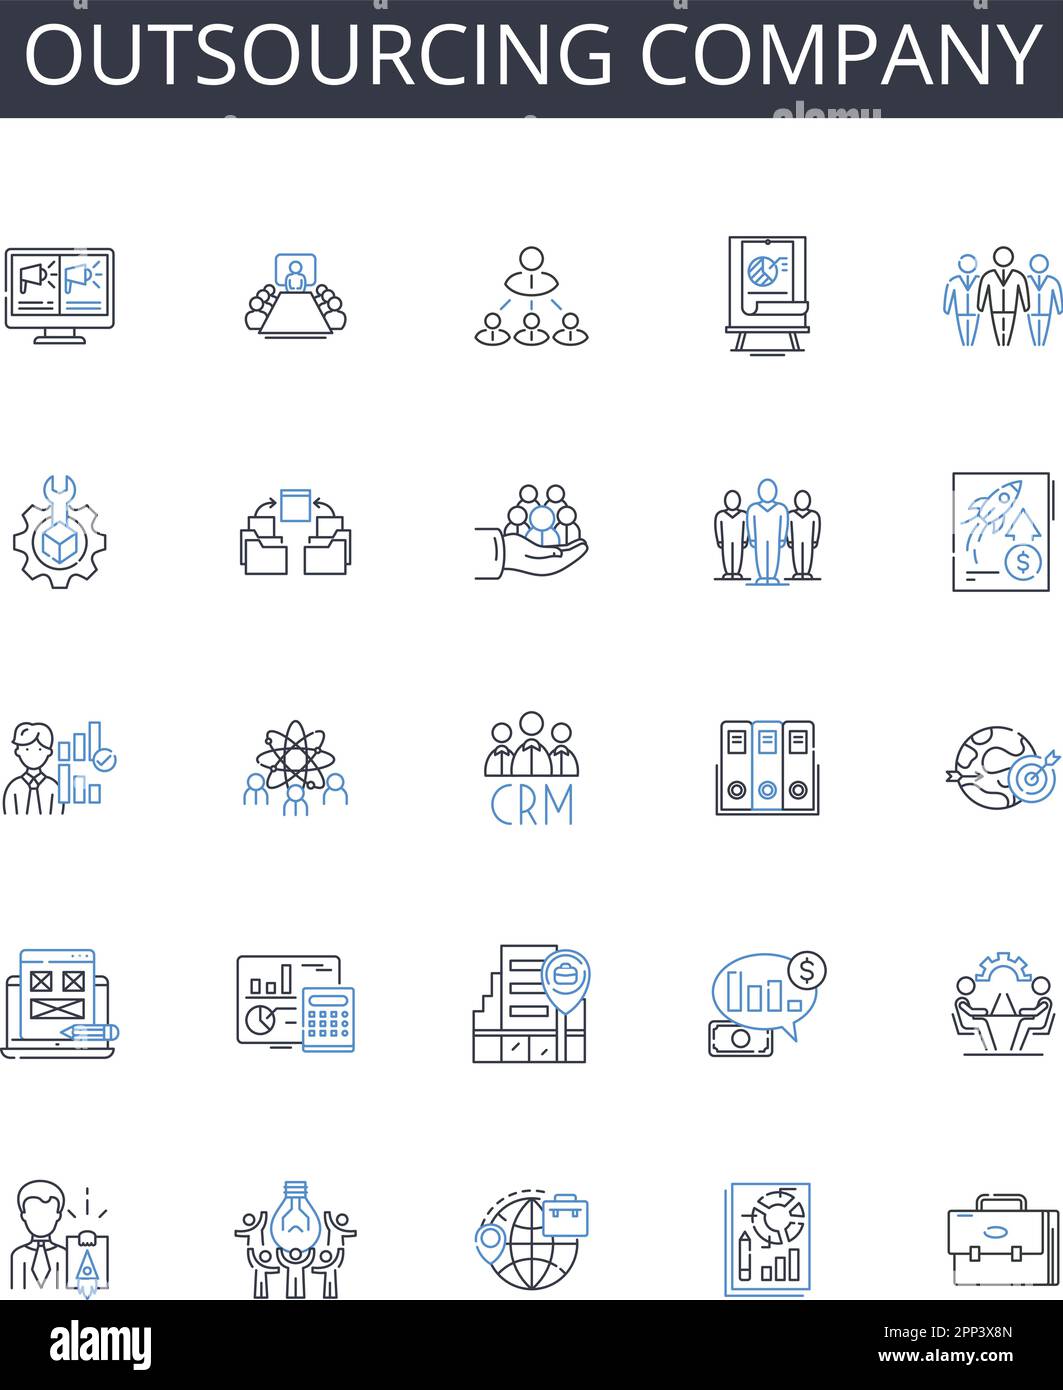 Outsourcing linea di raccolta icone società. Reattivo, intuitivo, Layout, navigazione, tipografia, Schema colori, grafica vettoriale e lineare Illustrazione Vettoriale